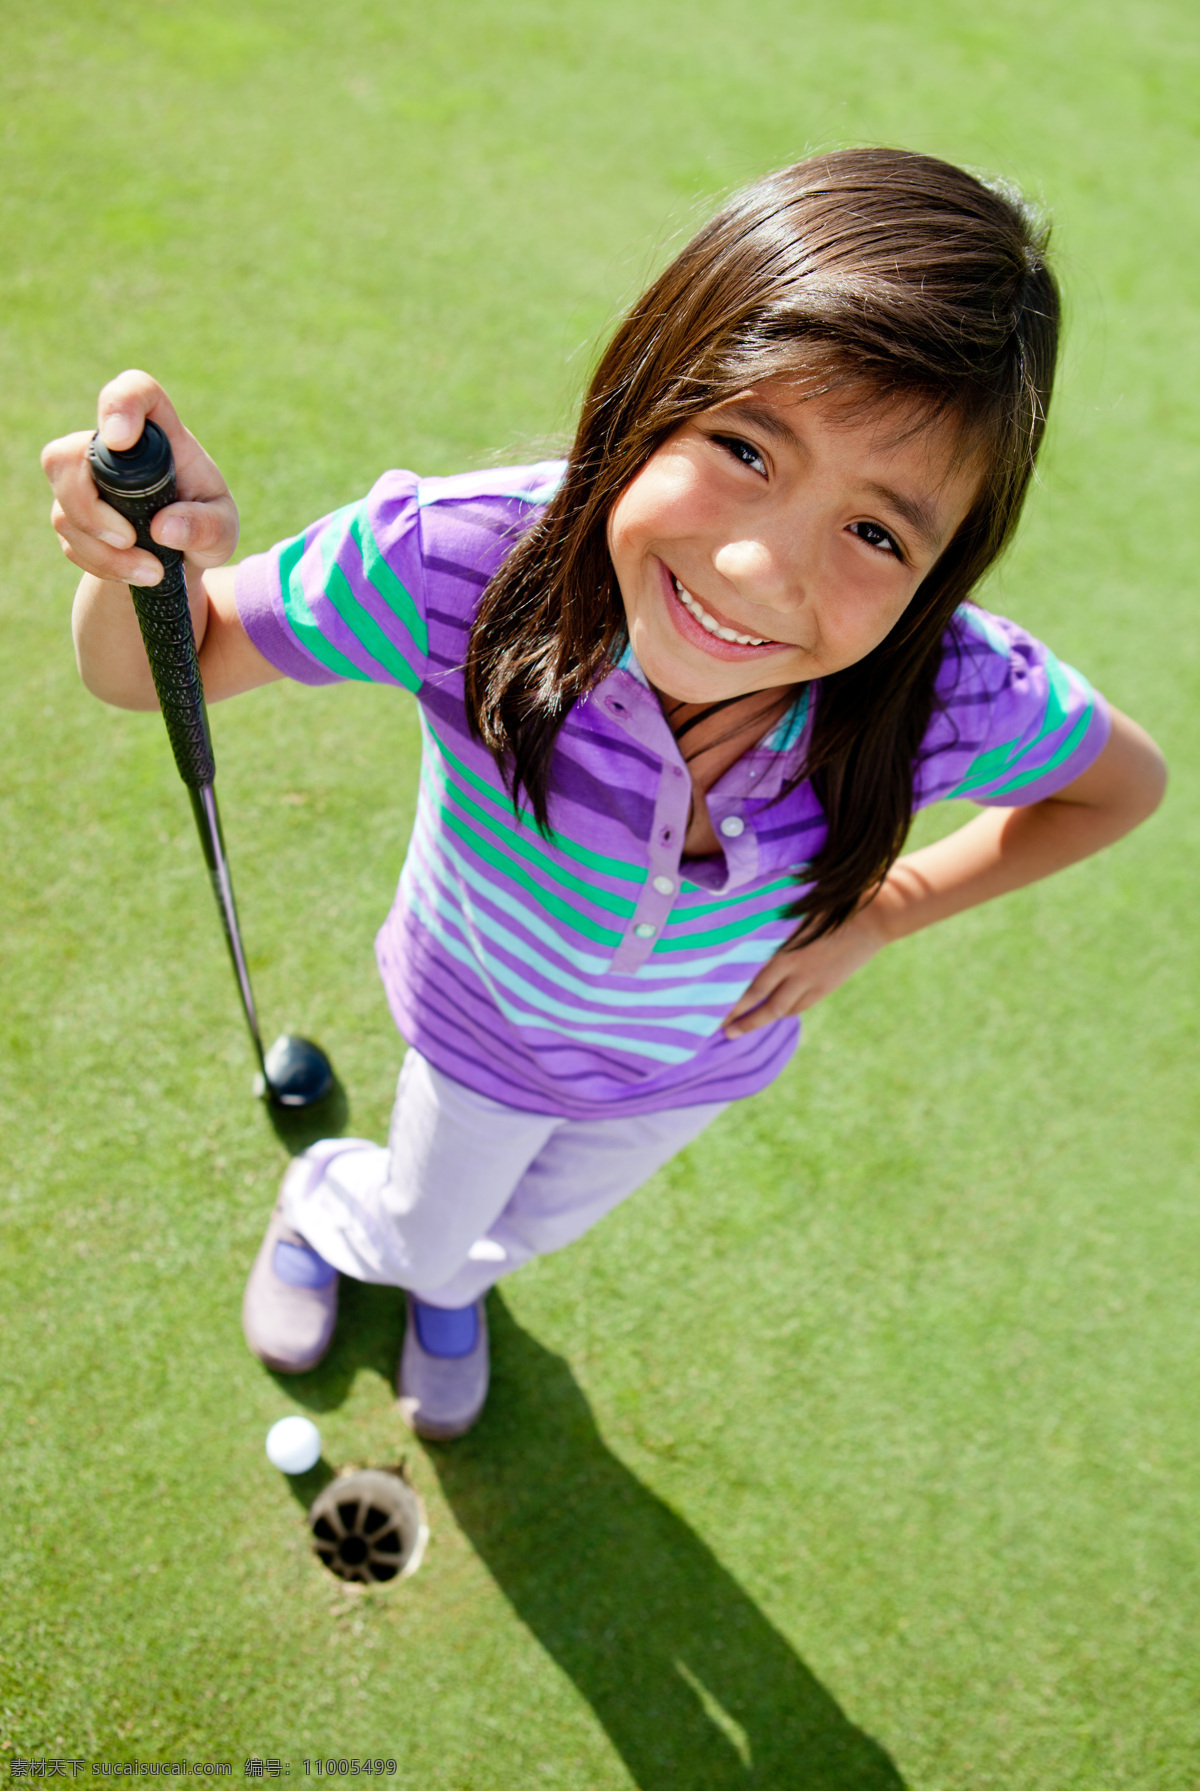 高尔夫 球杆 女孩 打球 运功 孩子 儿童图片 人物图片